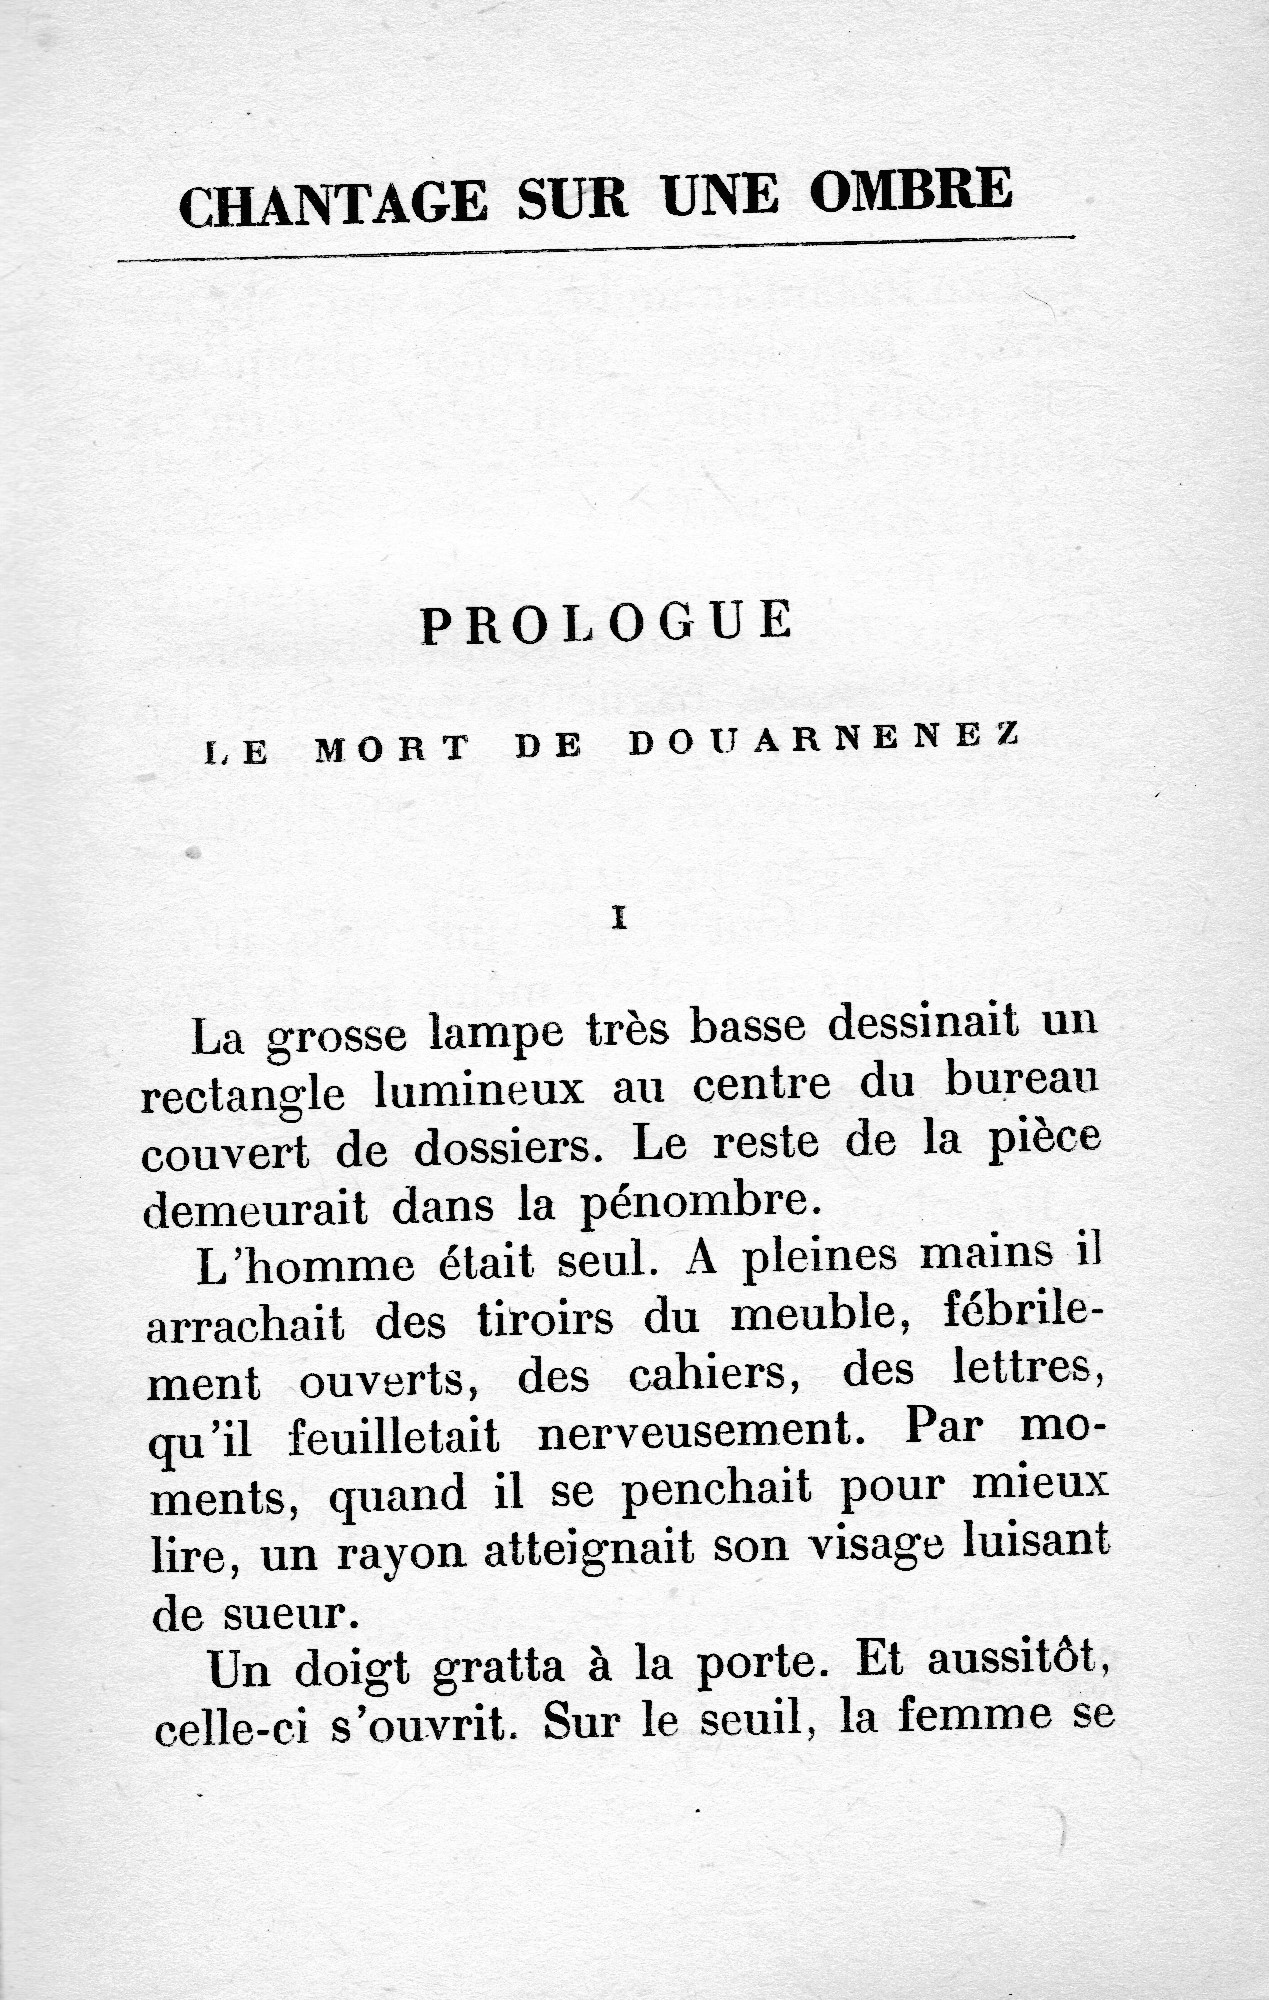 Chantage-sur-une-ombre, Le Masque (1963) - 1er chapitre offert - 1